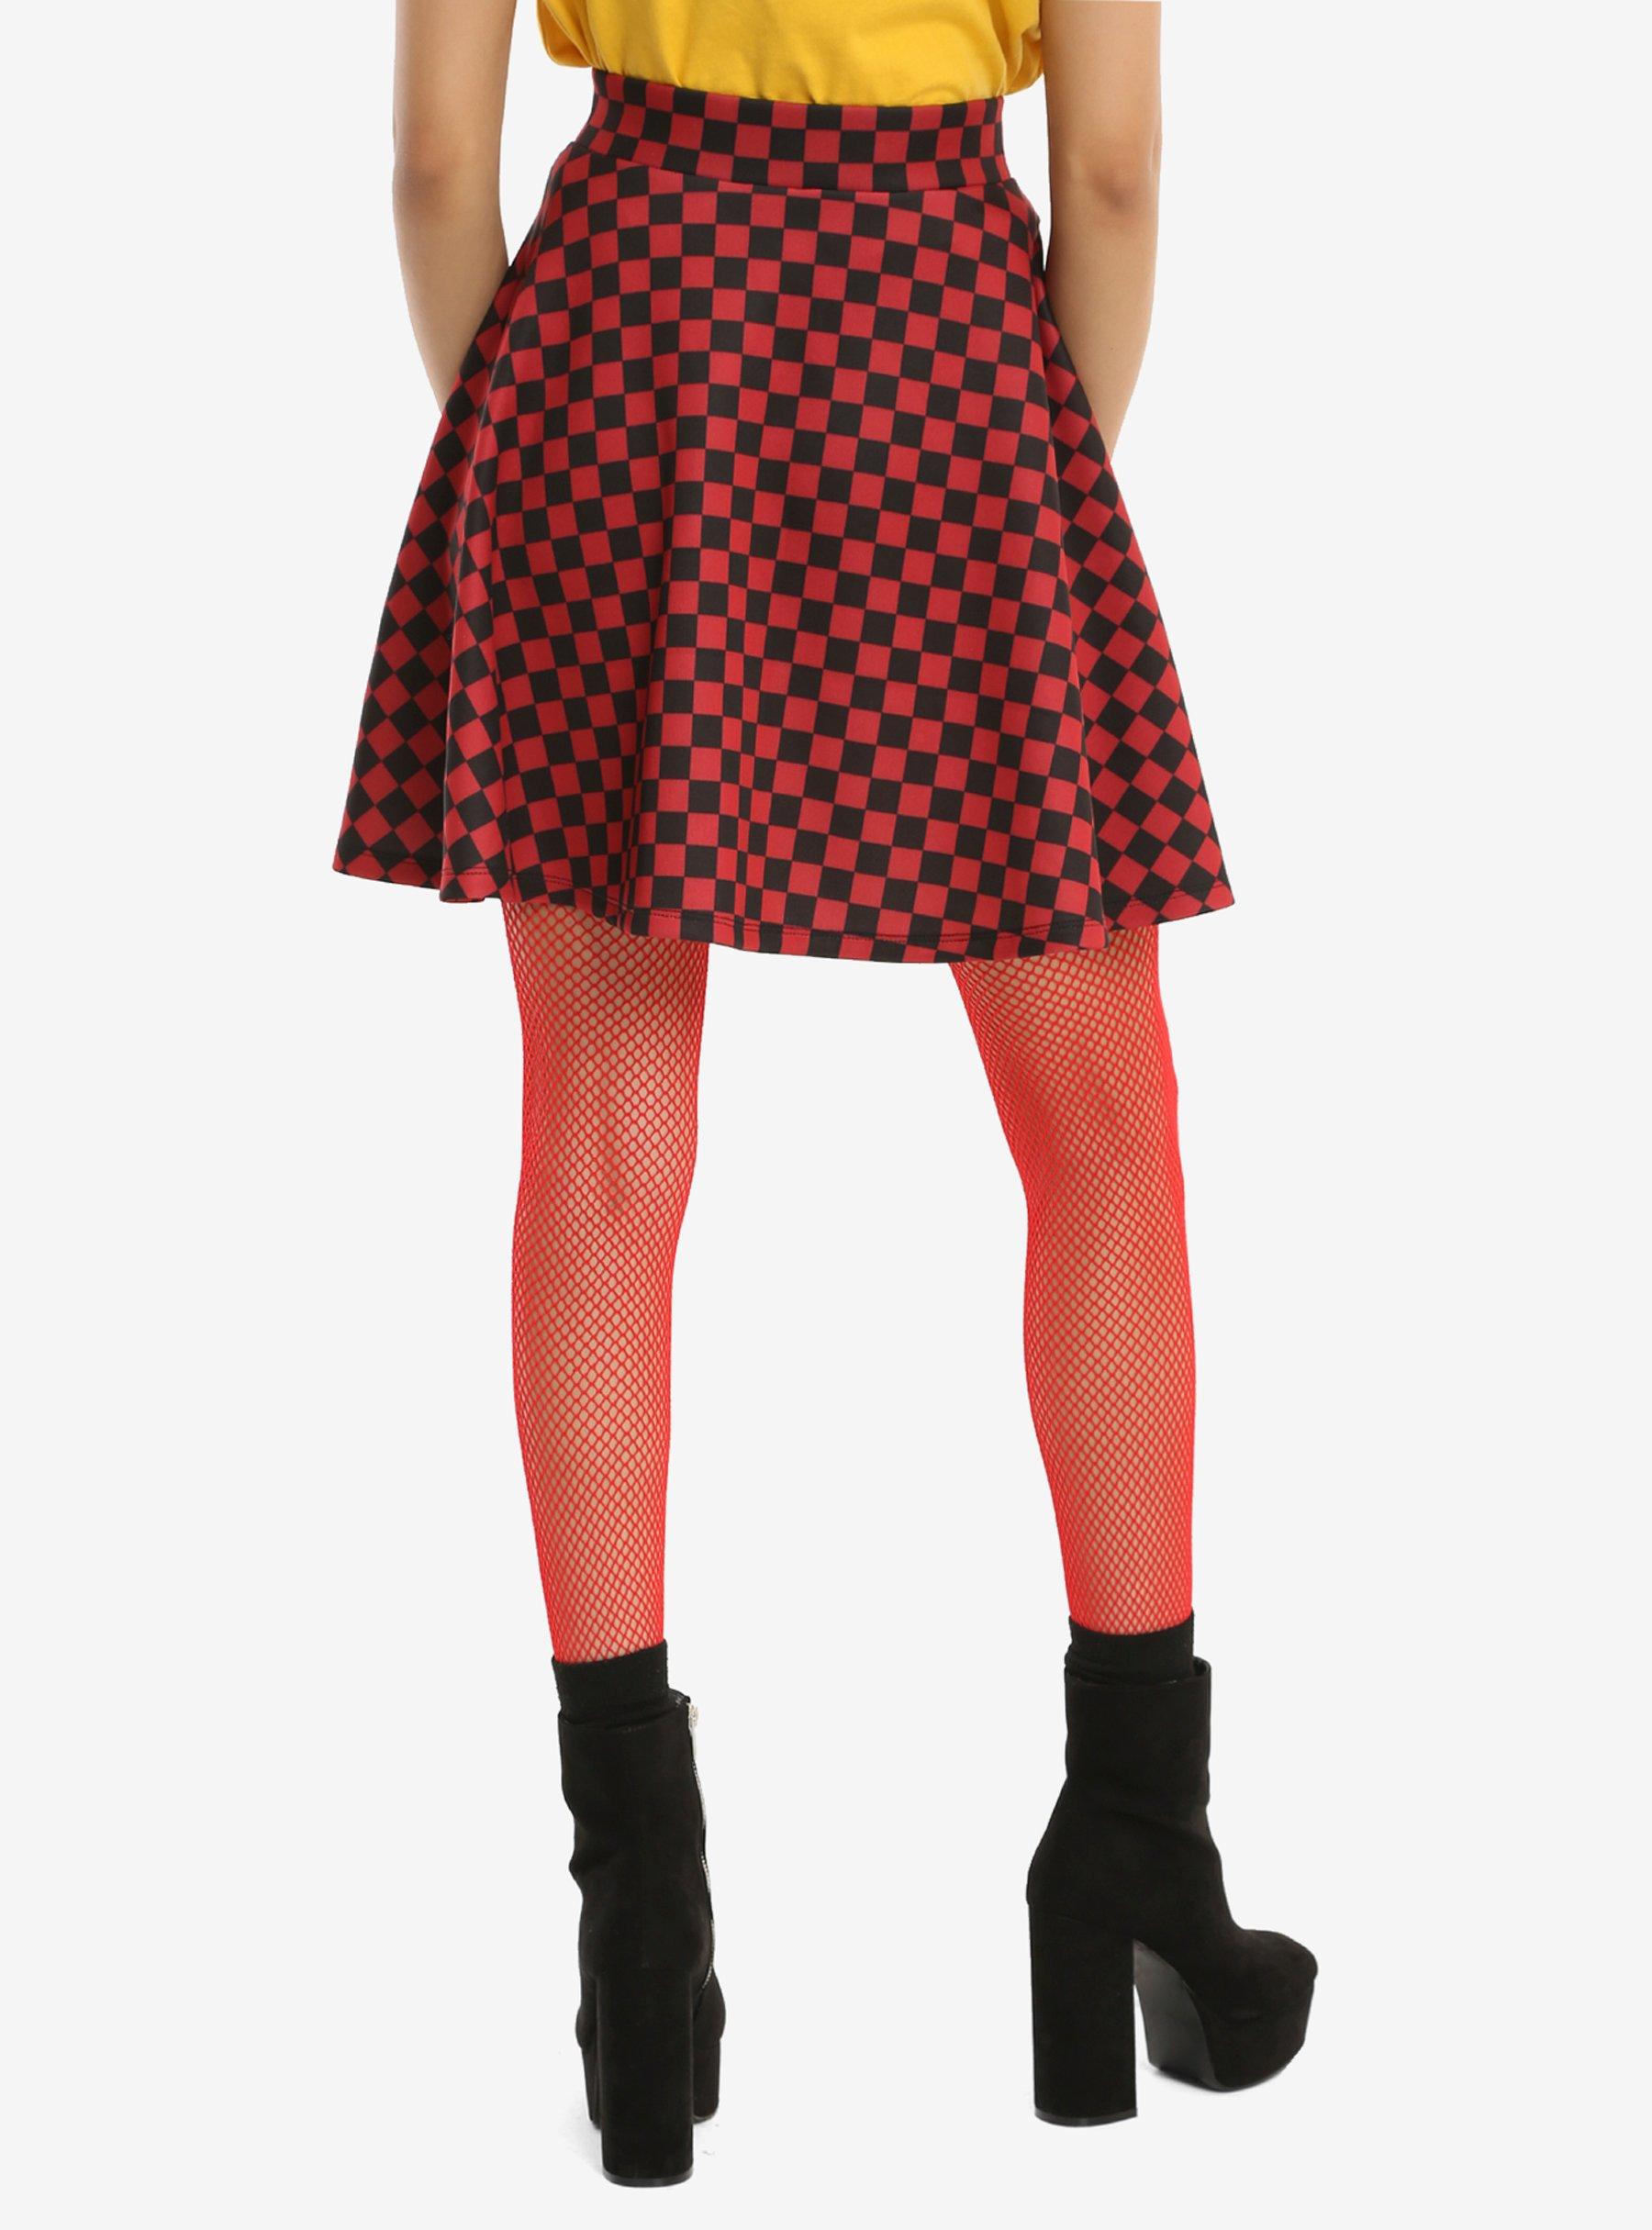 Red & Black Checkered Skirt, , alternate